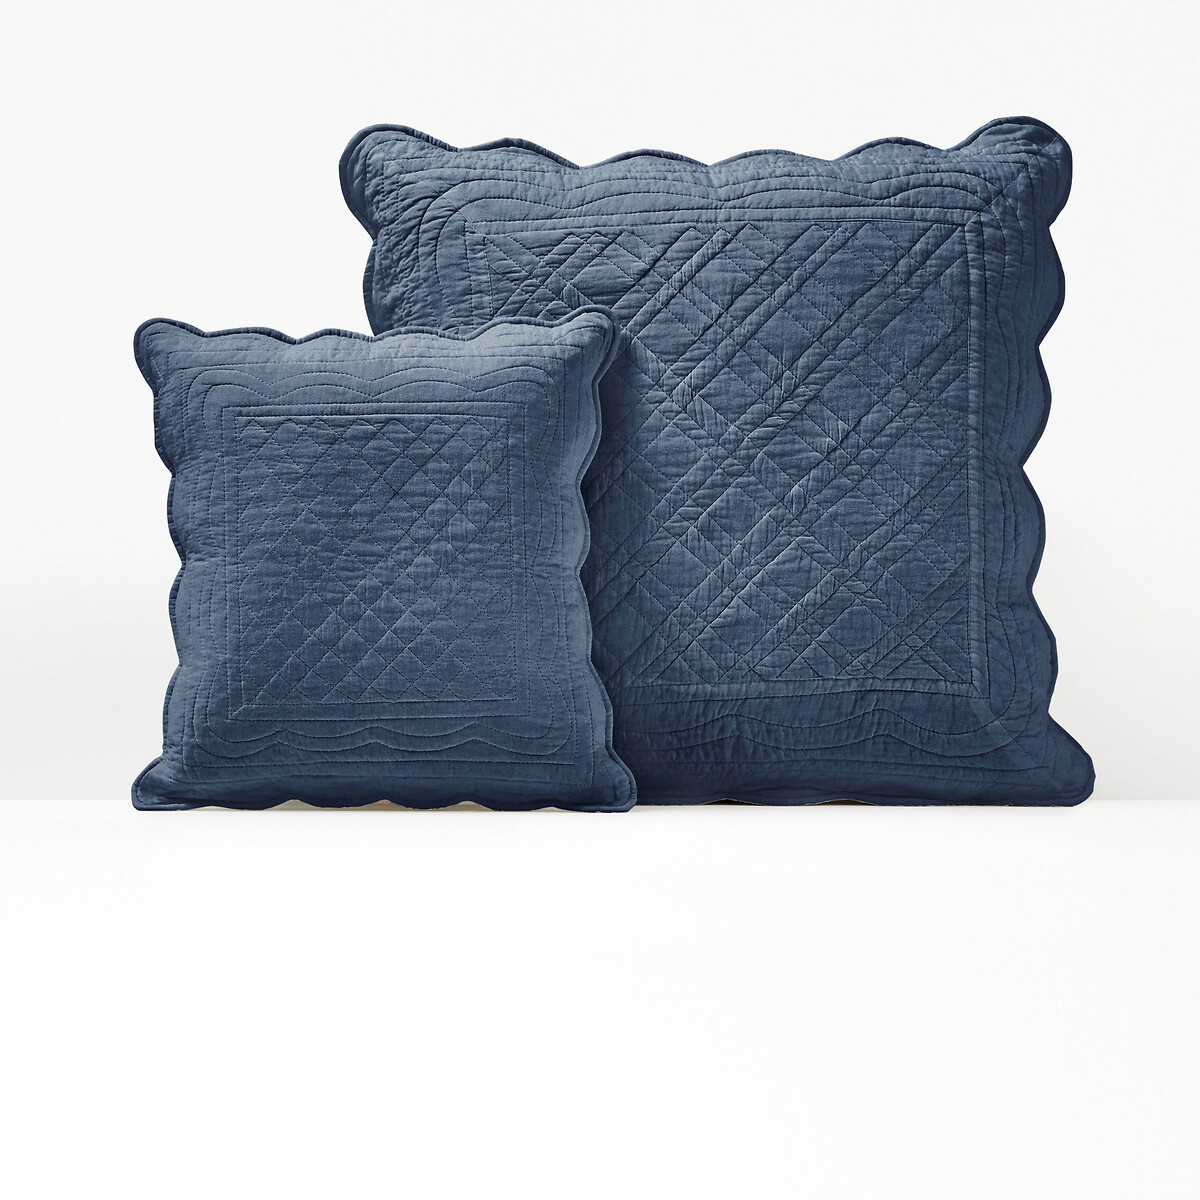 Чехол La Redoute На подушку или подушку-валик из хлопка SCENARIO 65 x 65 см синий, размер 65 x 65 см - фото 1